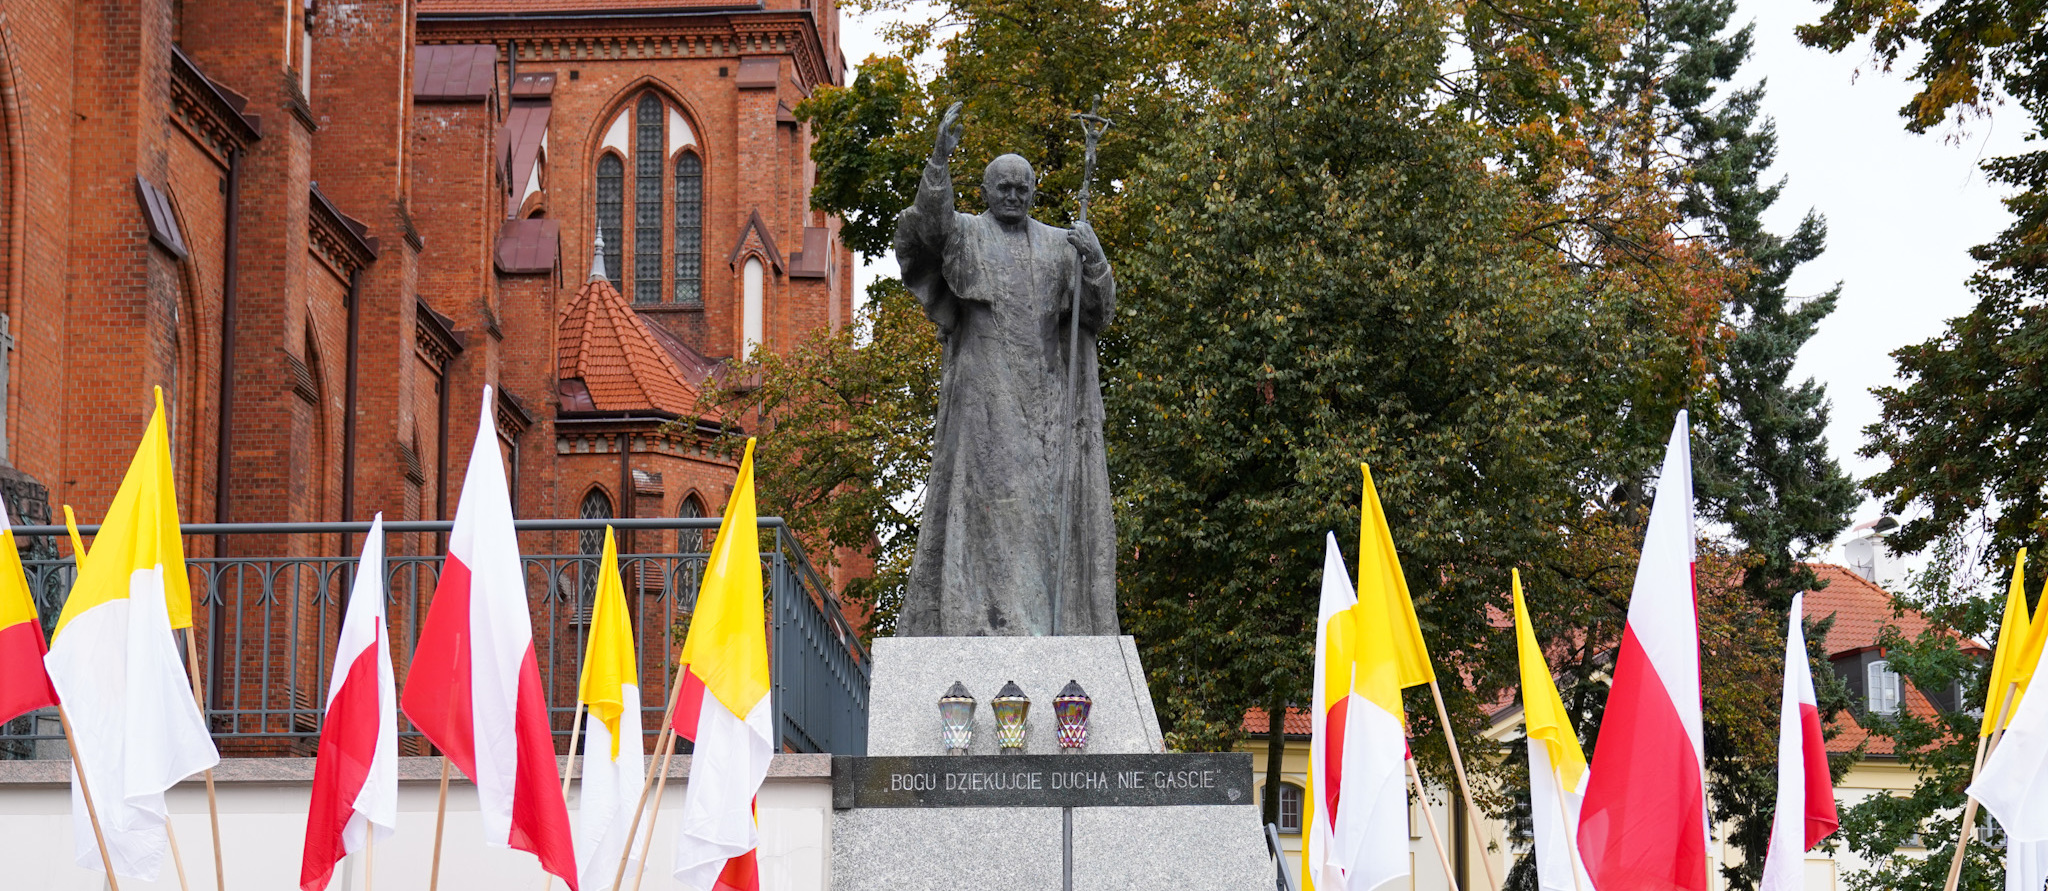 Pomnik Jana Pawła II udekorowany flagami w barwach narodowych, a także miasta Białystok oraz złożone kwiaty